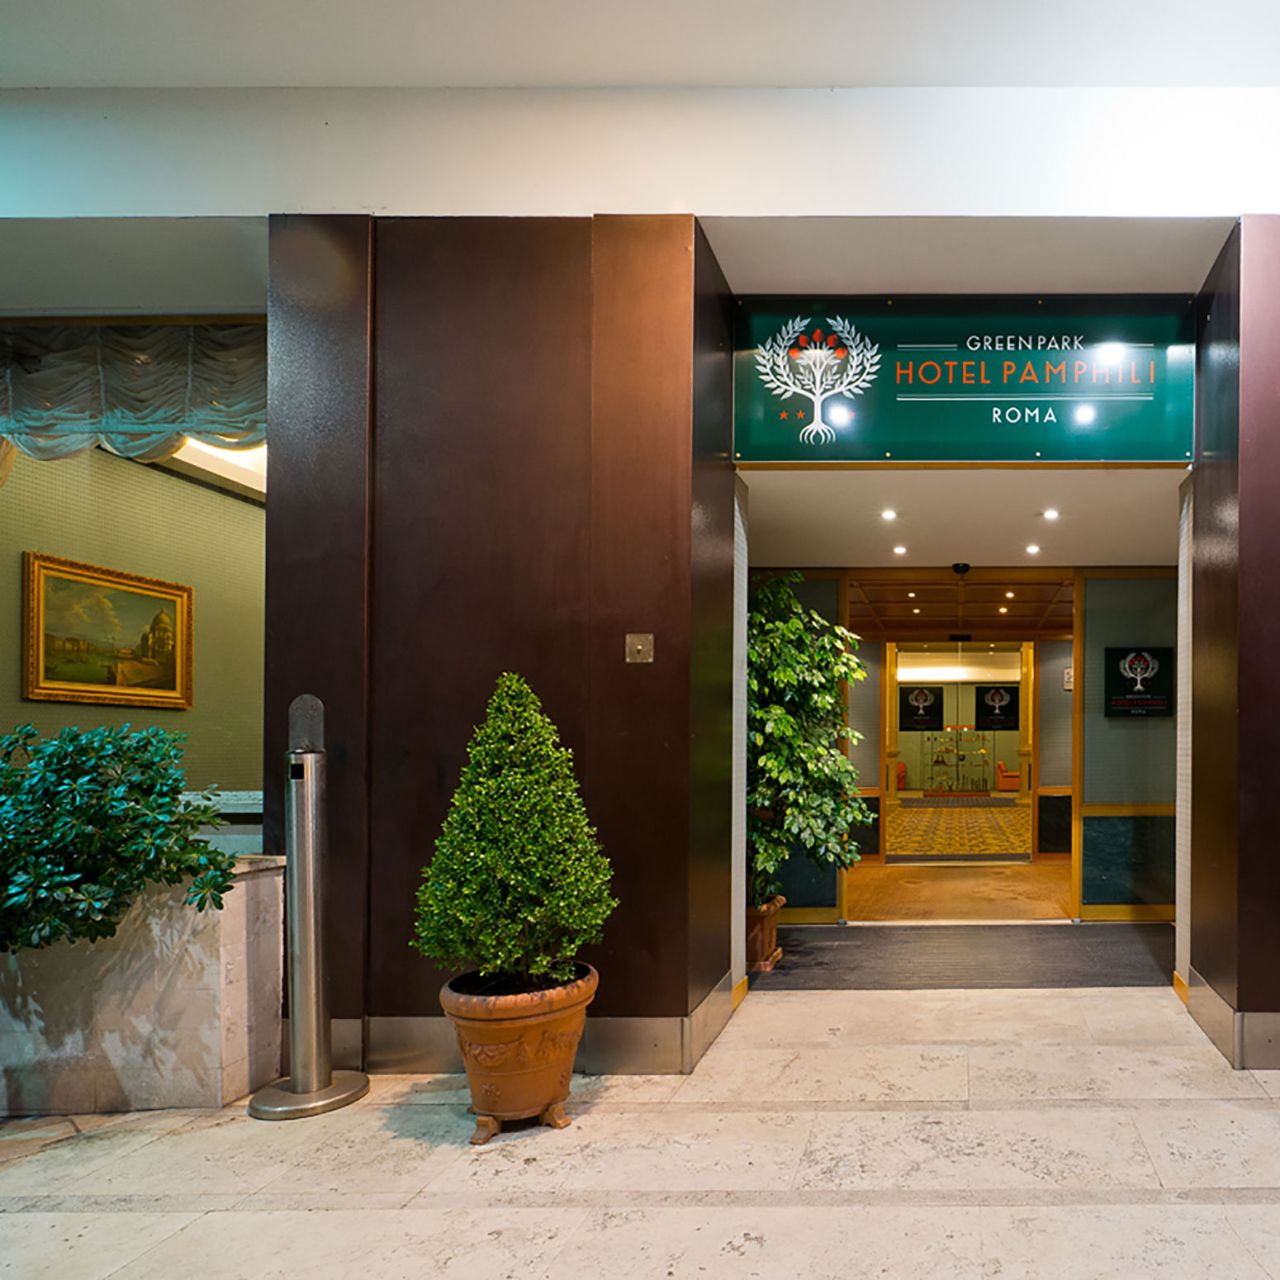 ELE Green Park Hotel Pamphili - Rome chez HRS avec services gratuits